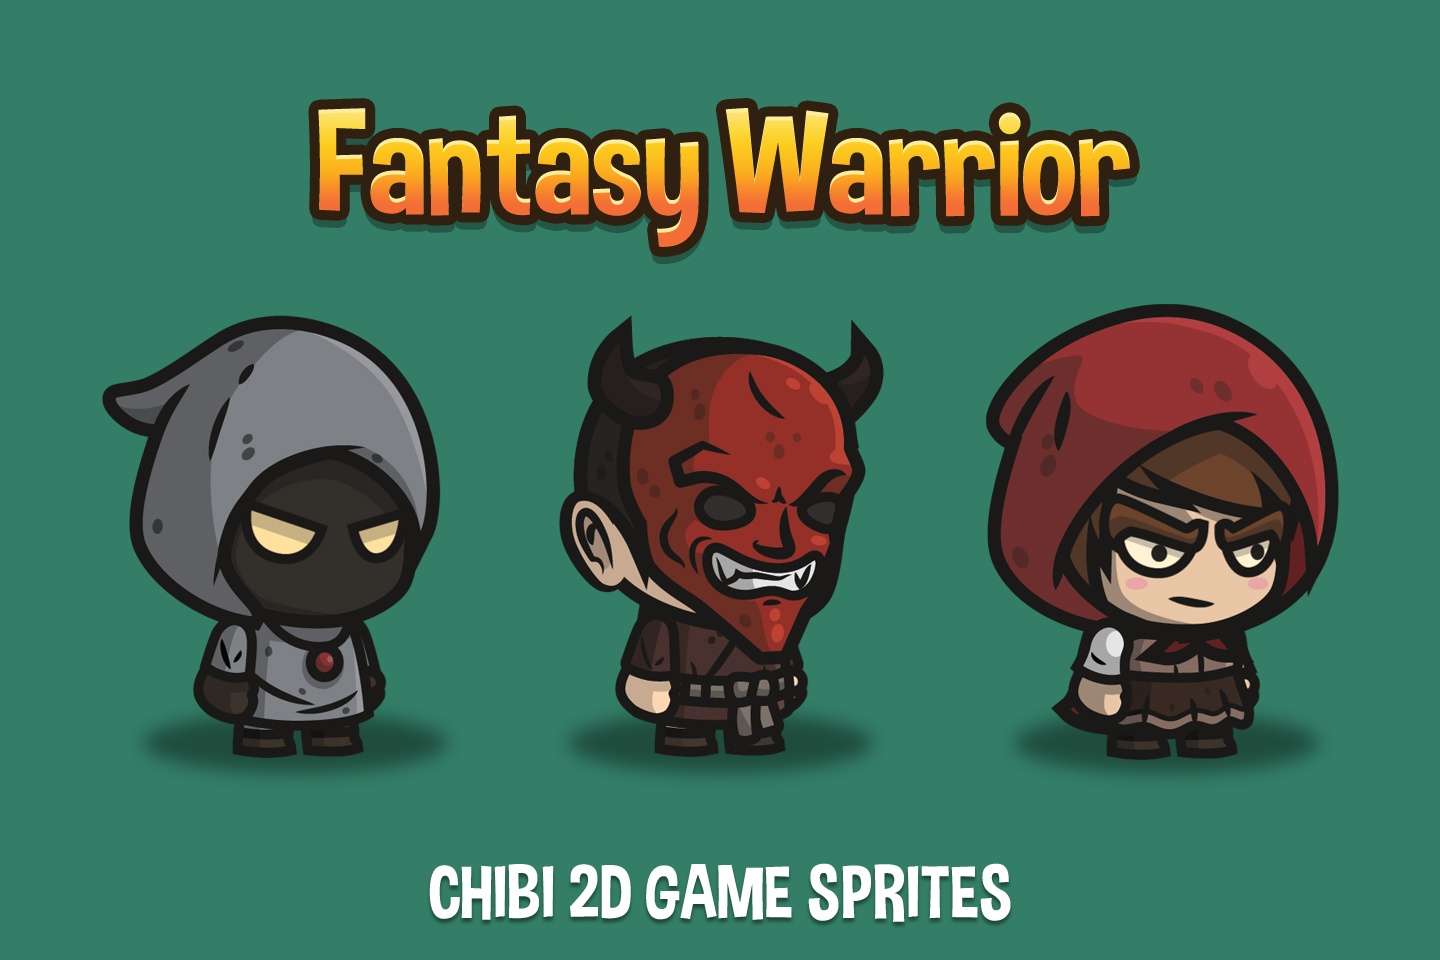 Chiến binh giả tưởng Chibi 2D Game Sprites luôn là những yếu tố không thể thiếu trong game đang được yêu thích. Những sprites được thiết kế đặc biệt để tạo ra những nhân vật chiến binh giả tưởng đẹp mắt và đồng thời cực kỳ thú vị để tạo nên gameplay mới lạ và hấp dẫn cho người chơi.